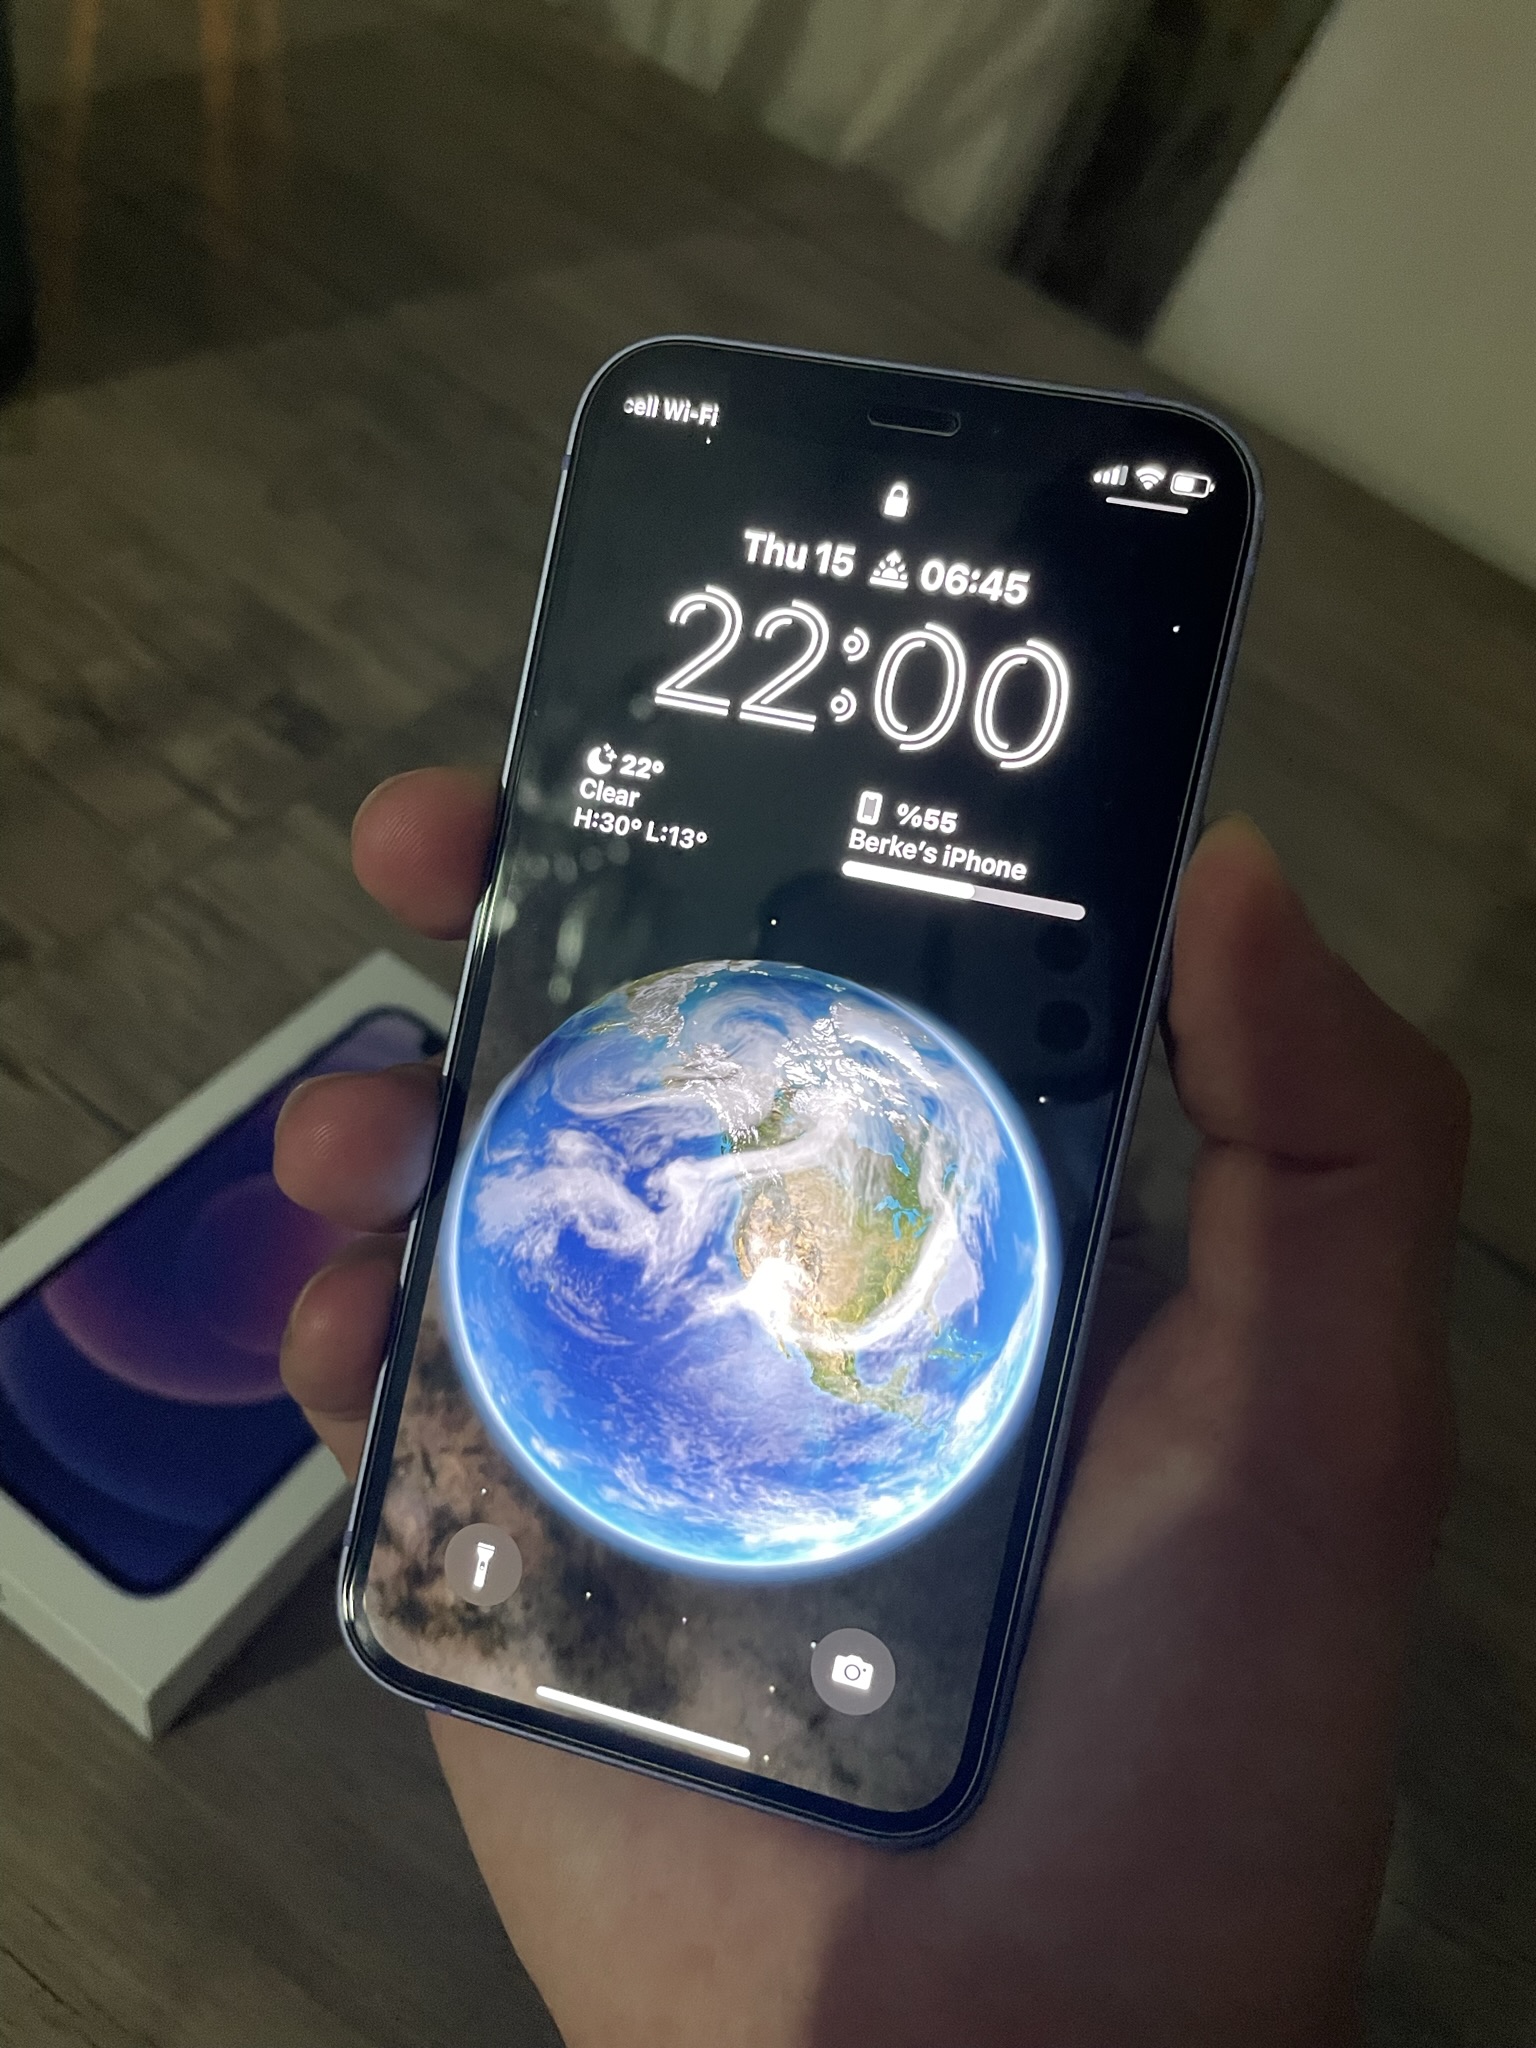 Forum Dışına Satıldı) Mor iPhone 12 Mini 64GB Apple Türkiye Garantili |  DonanımHaber Forum